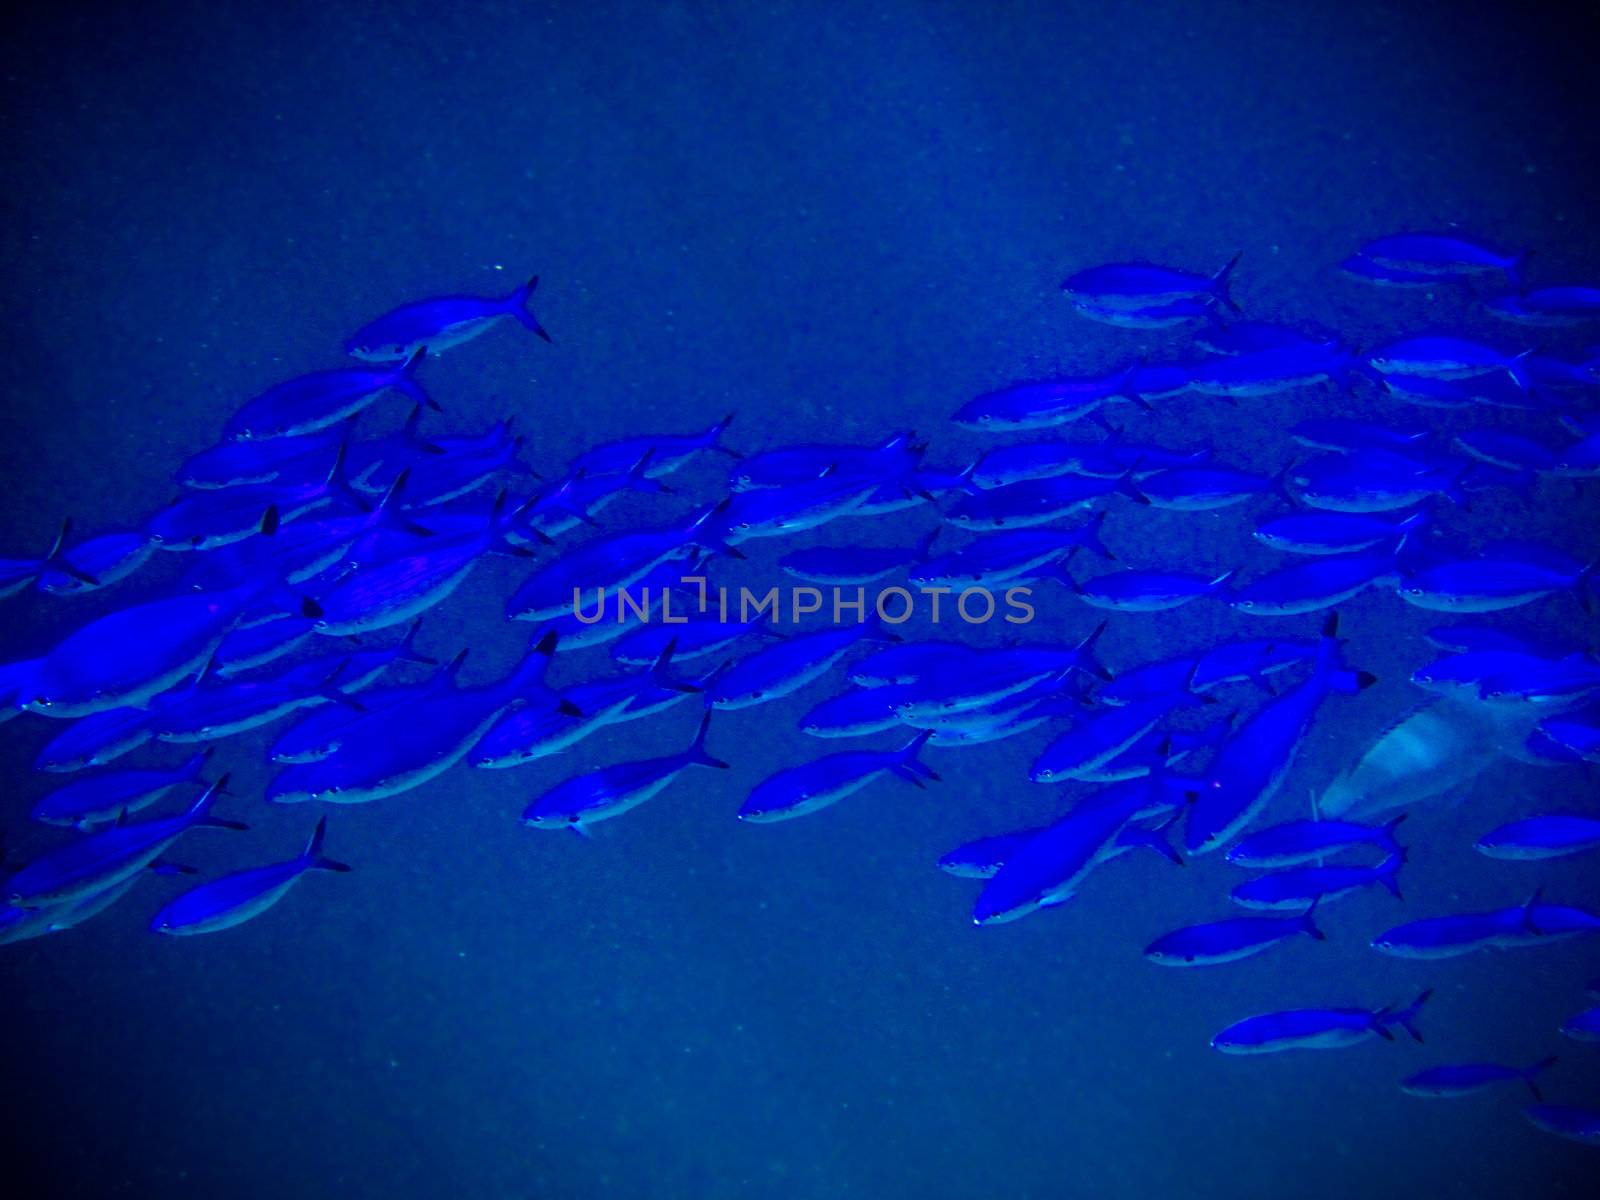 under water world at Maldives by anobis